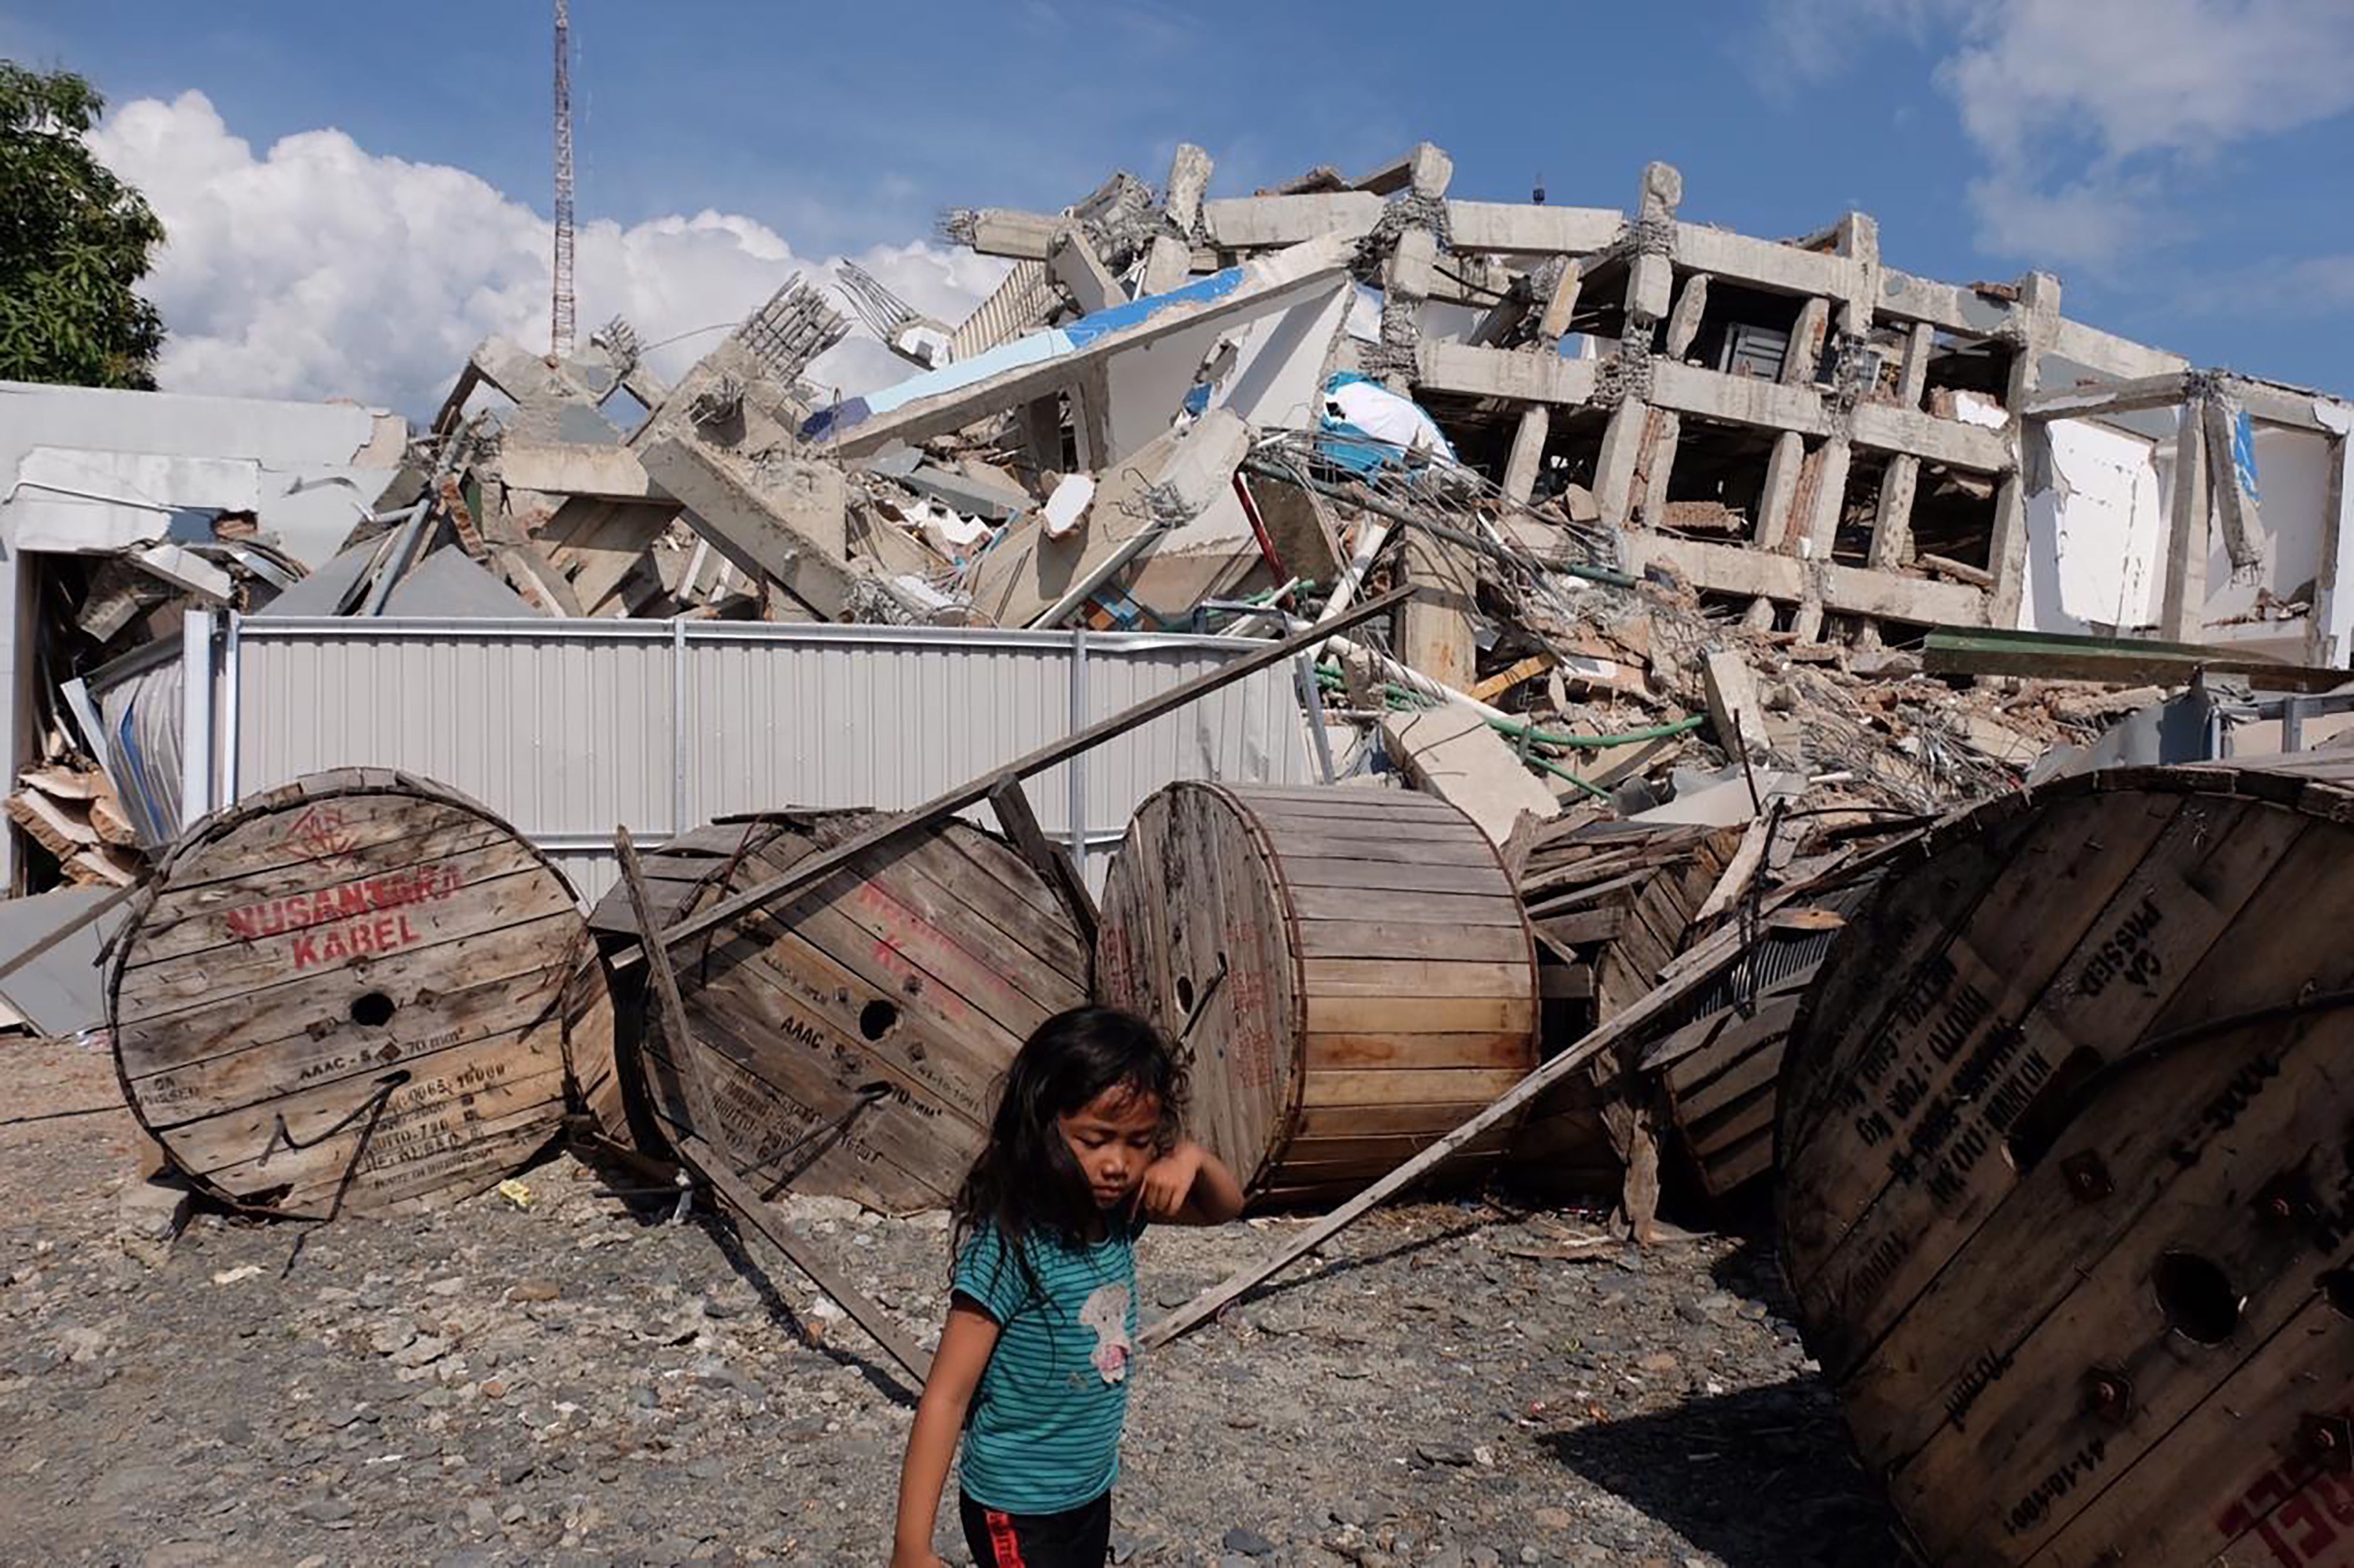 La ONU alerta del peligro de epidemias y de abuso de niños tras la catástrofe en Indonesia